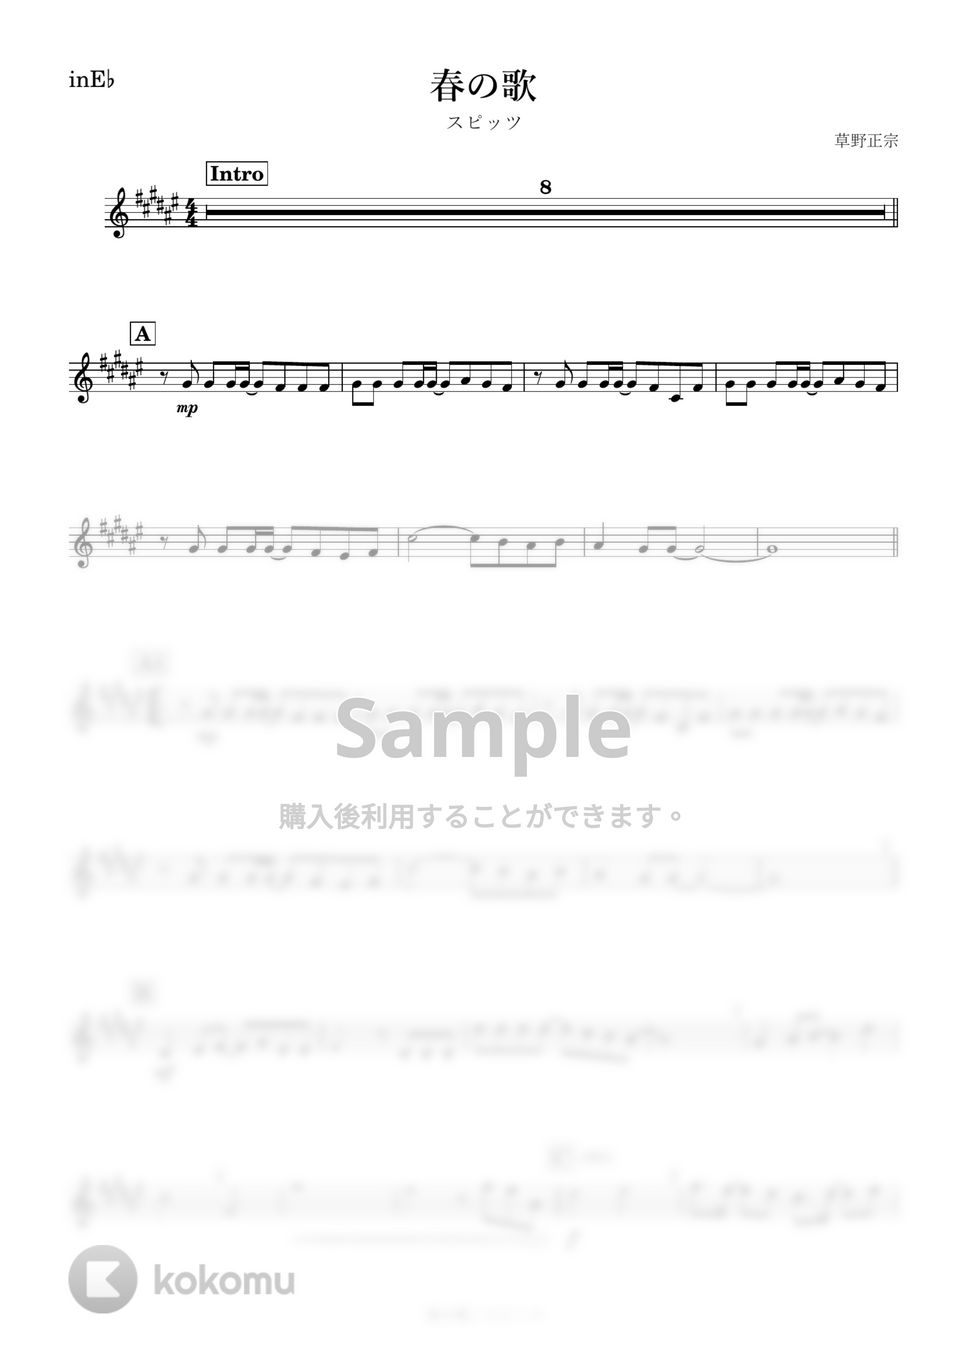 スピッツ - 春の歌 (E♭) by kanamusic